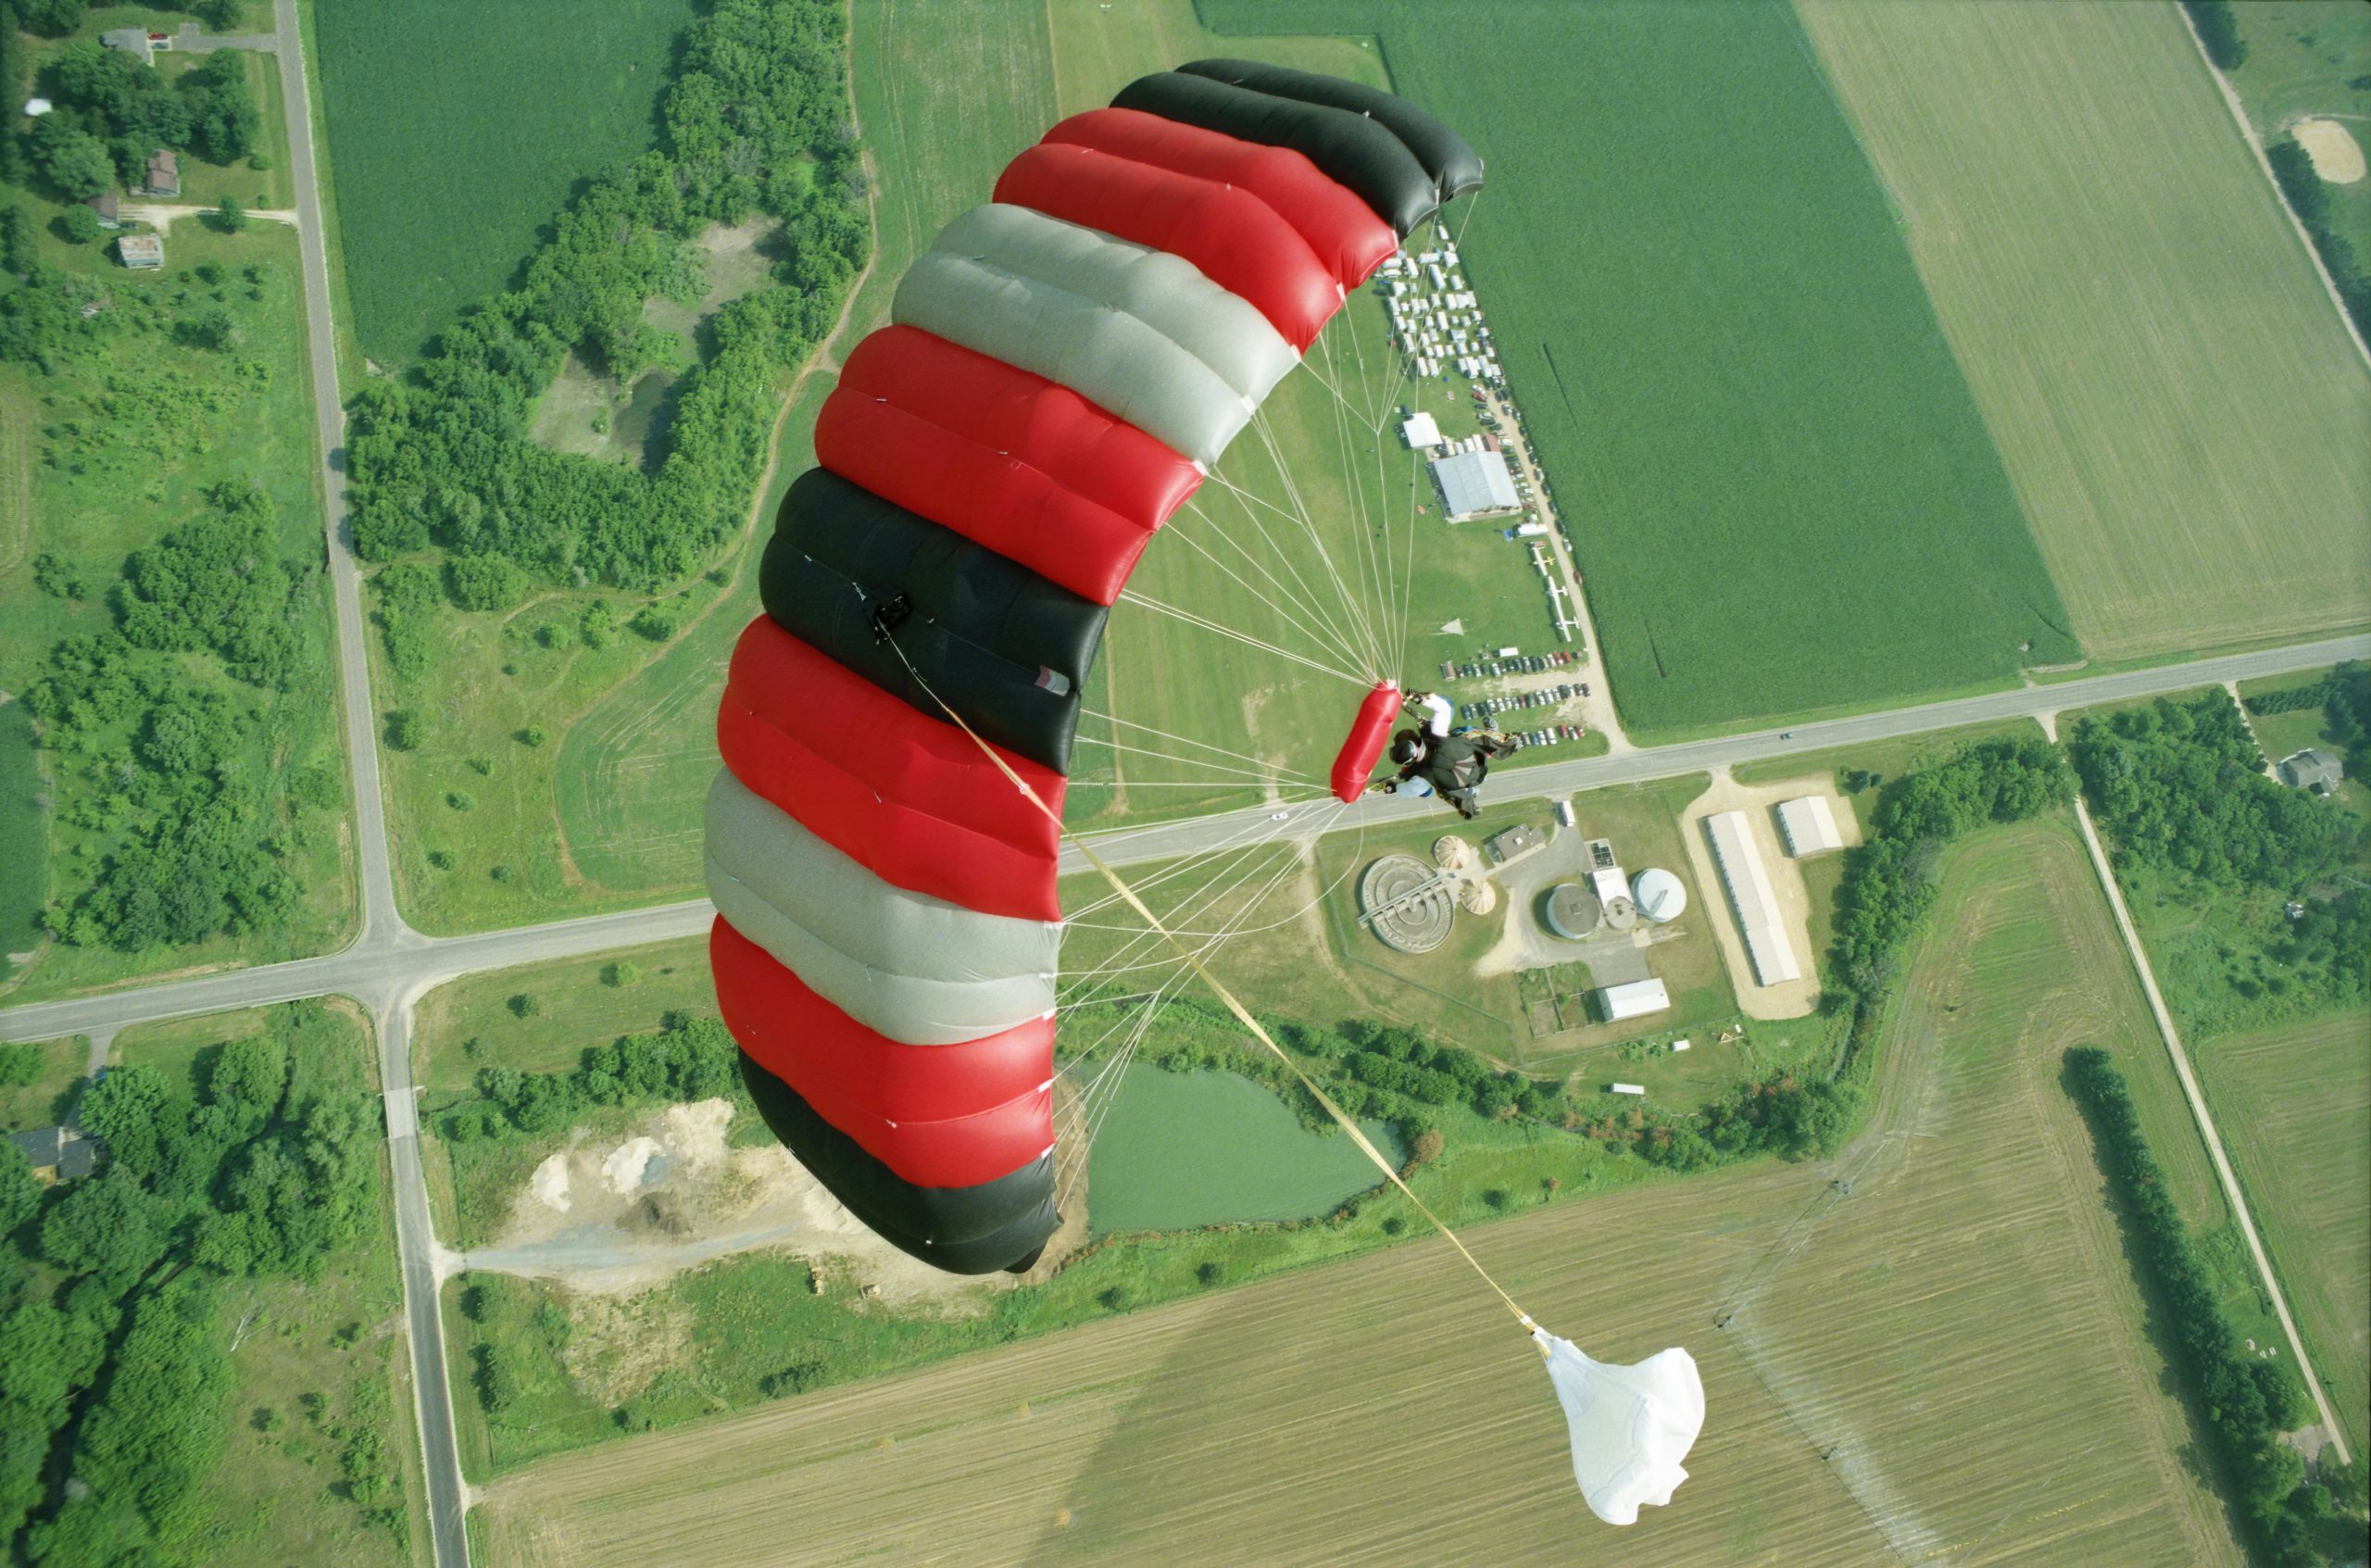 Une vue plongeante sur un parachutiste en plein vol avec un parachute rouge et noir, au-dessus d'un paysage verdoyant